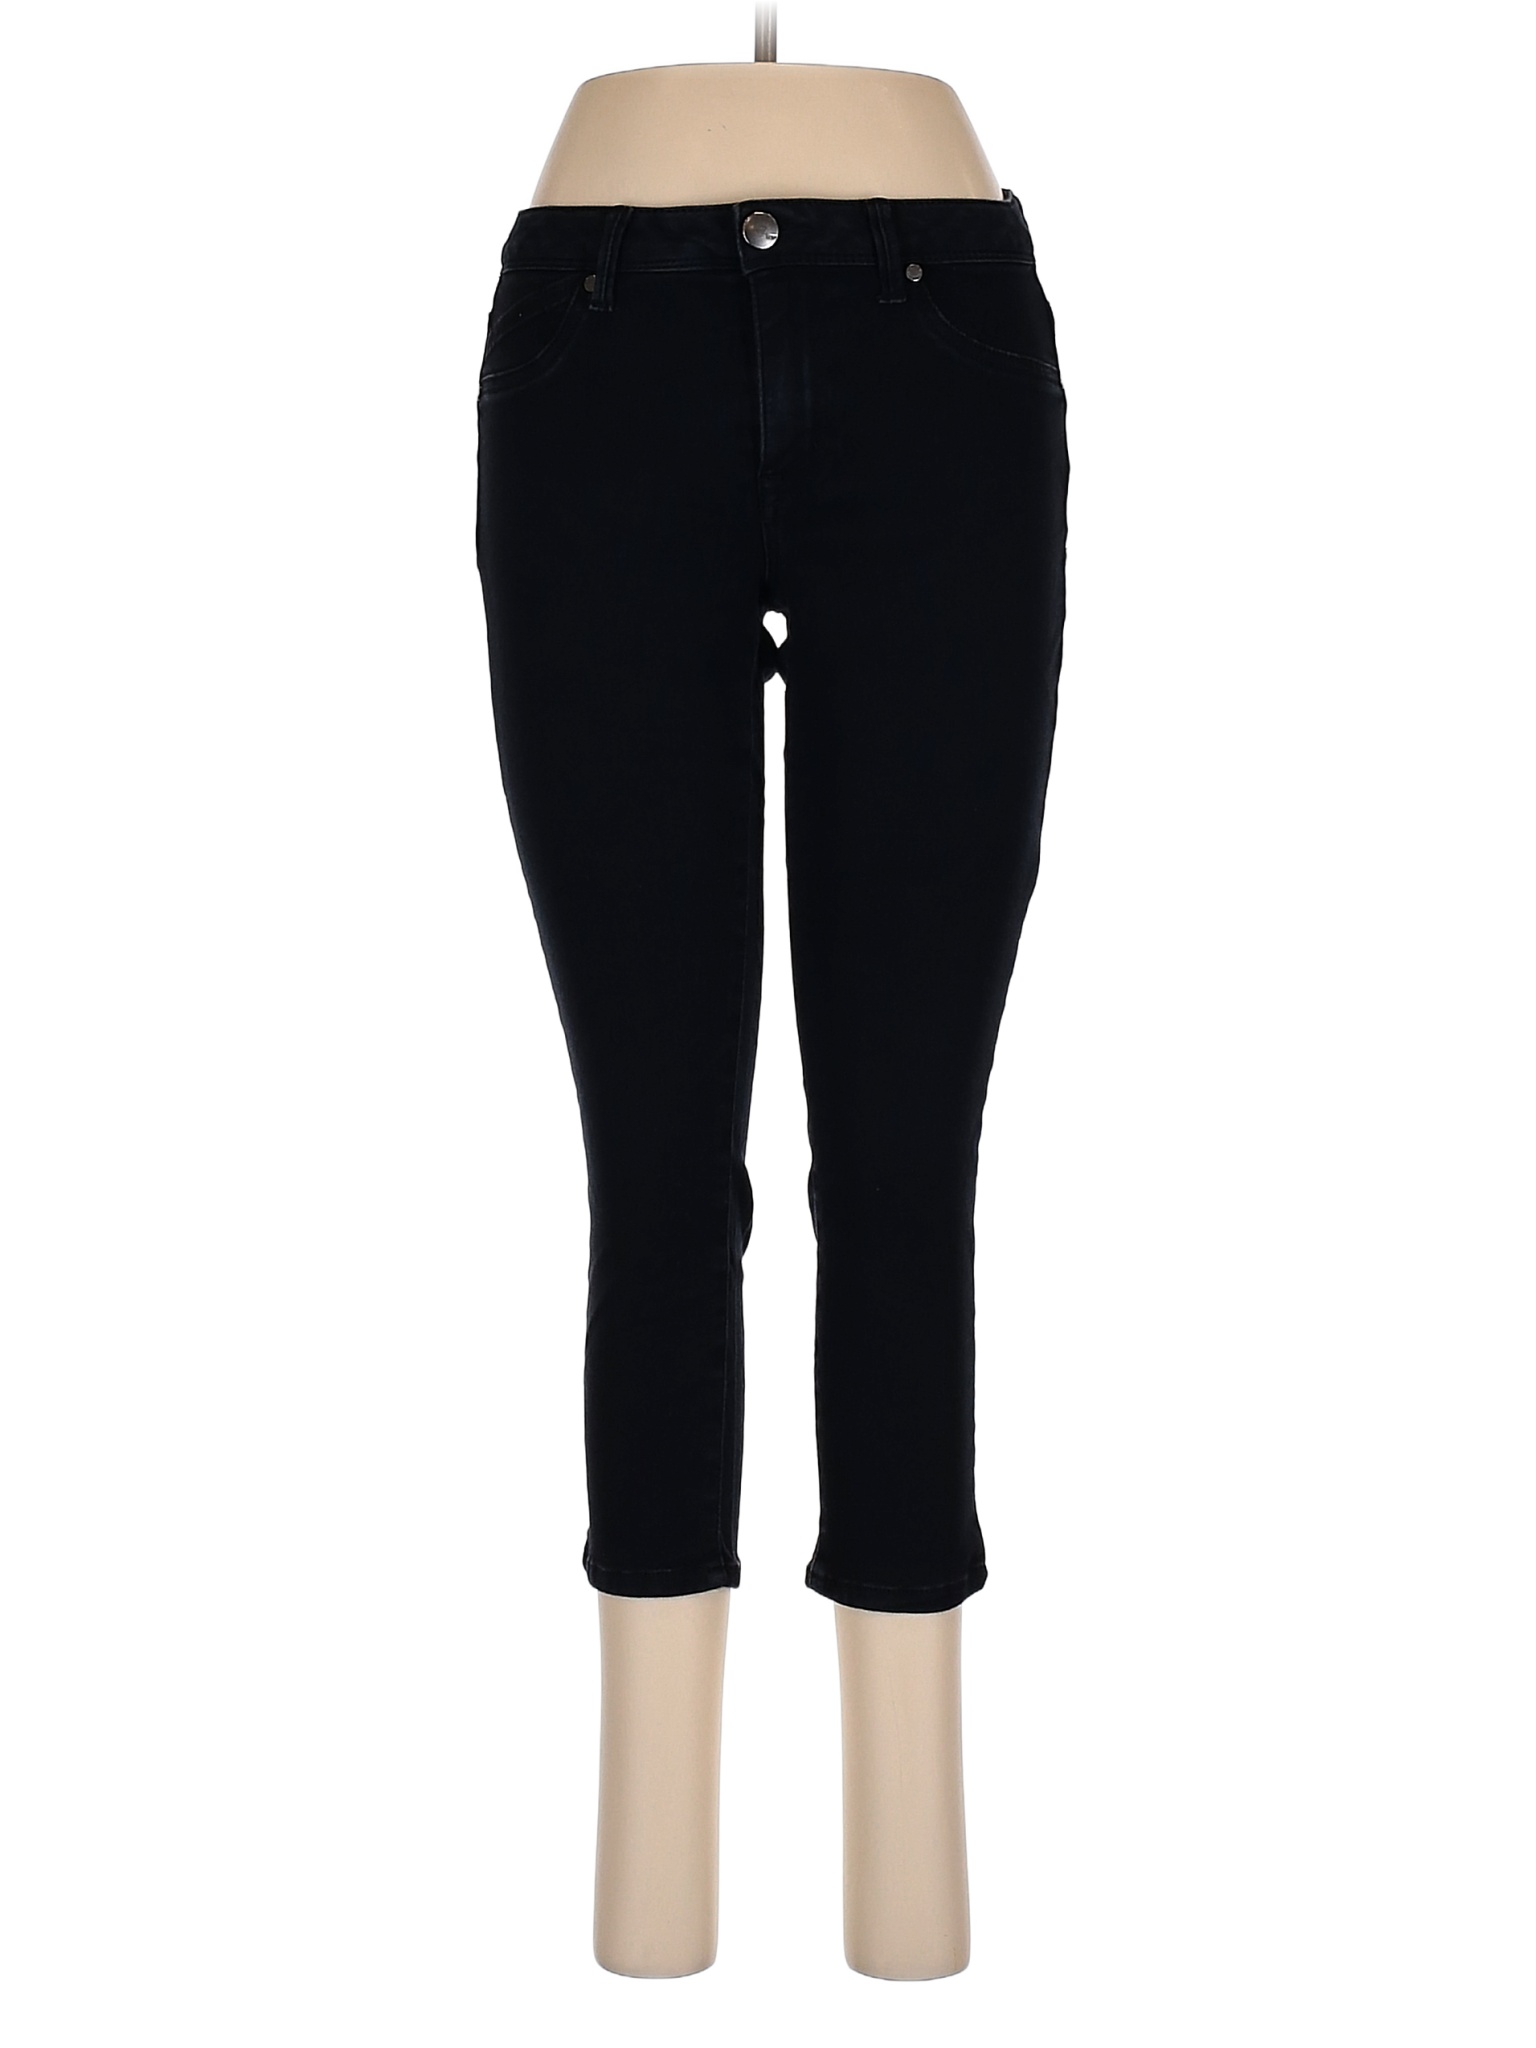 1822 Denim Solid Black Jeans Size 6 - 71% off | thredUP